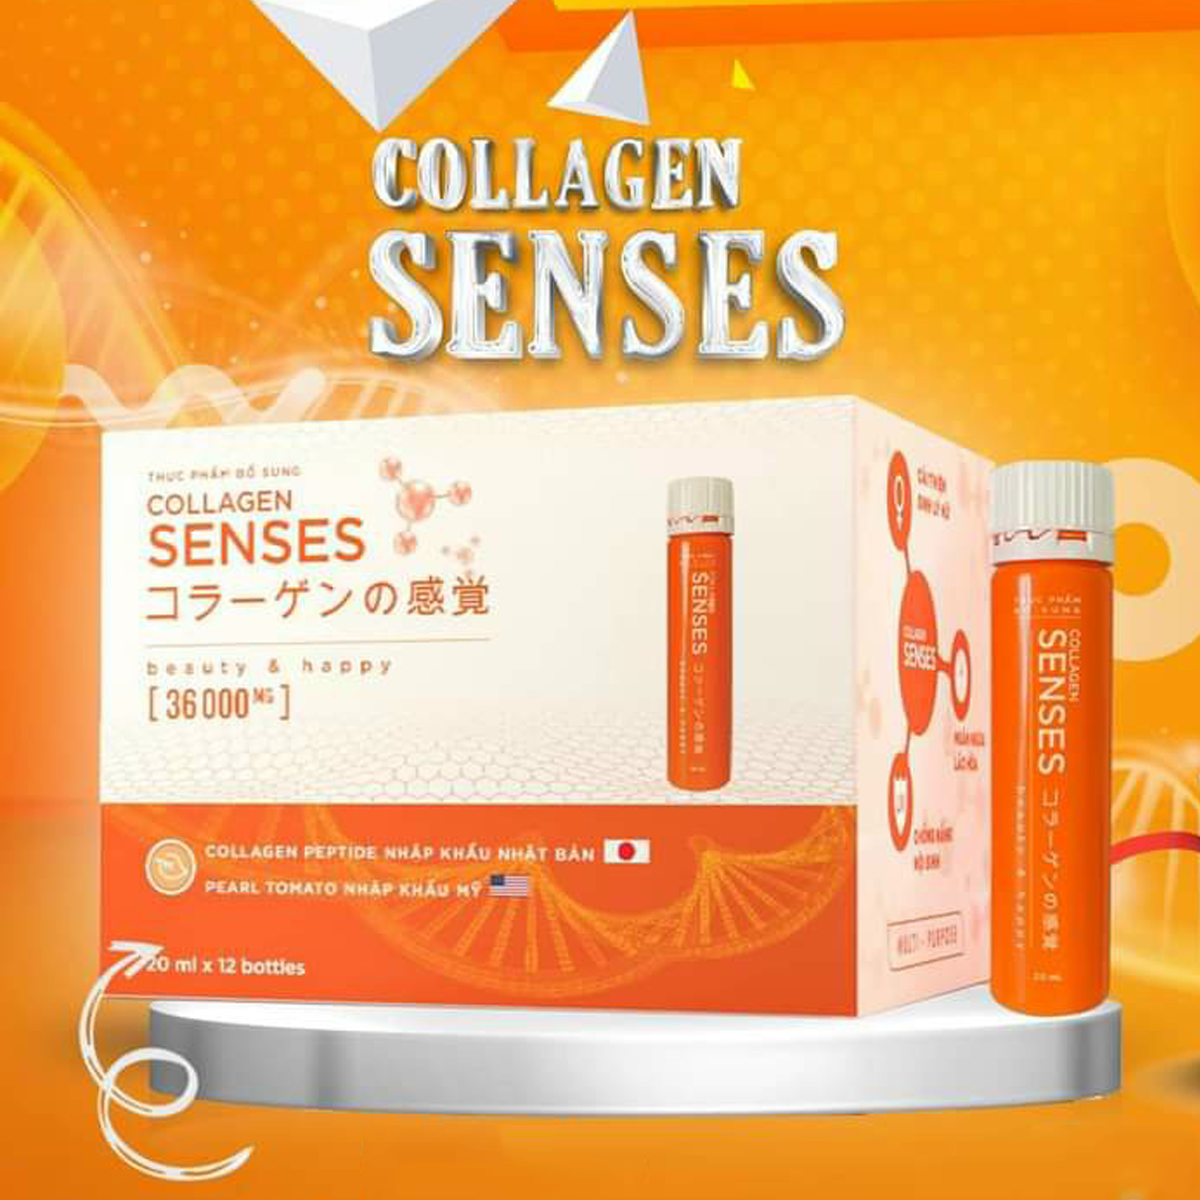 Collagen Senses